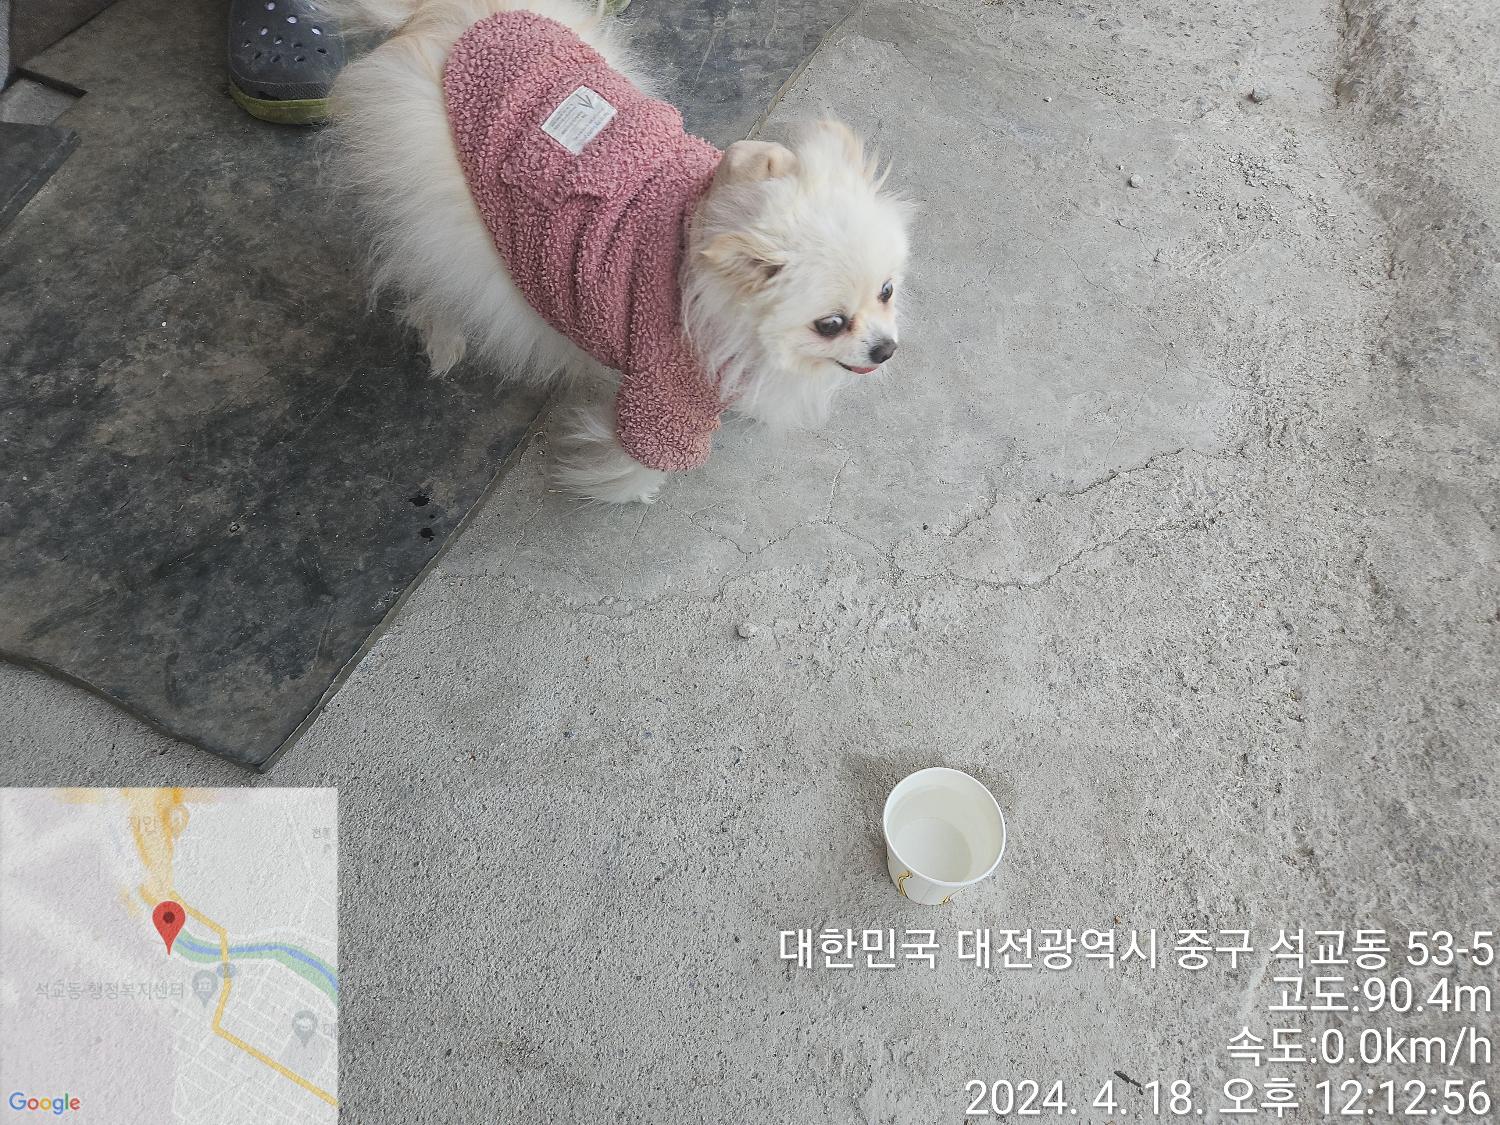 공고 번호가 대전-중구-2024-00076인 포메라니안 동물 사진  